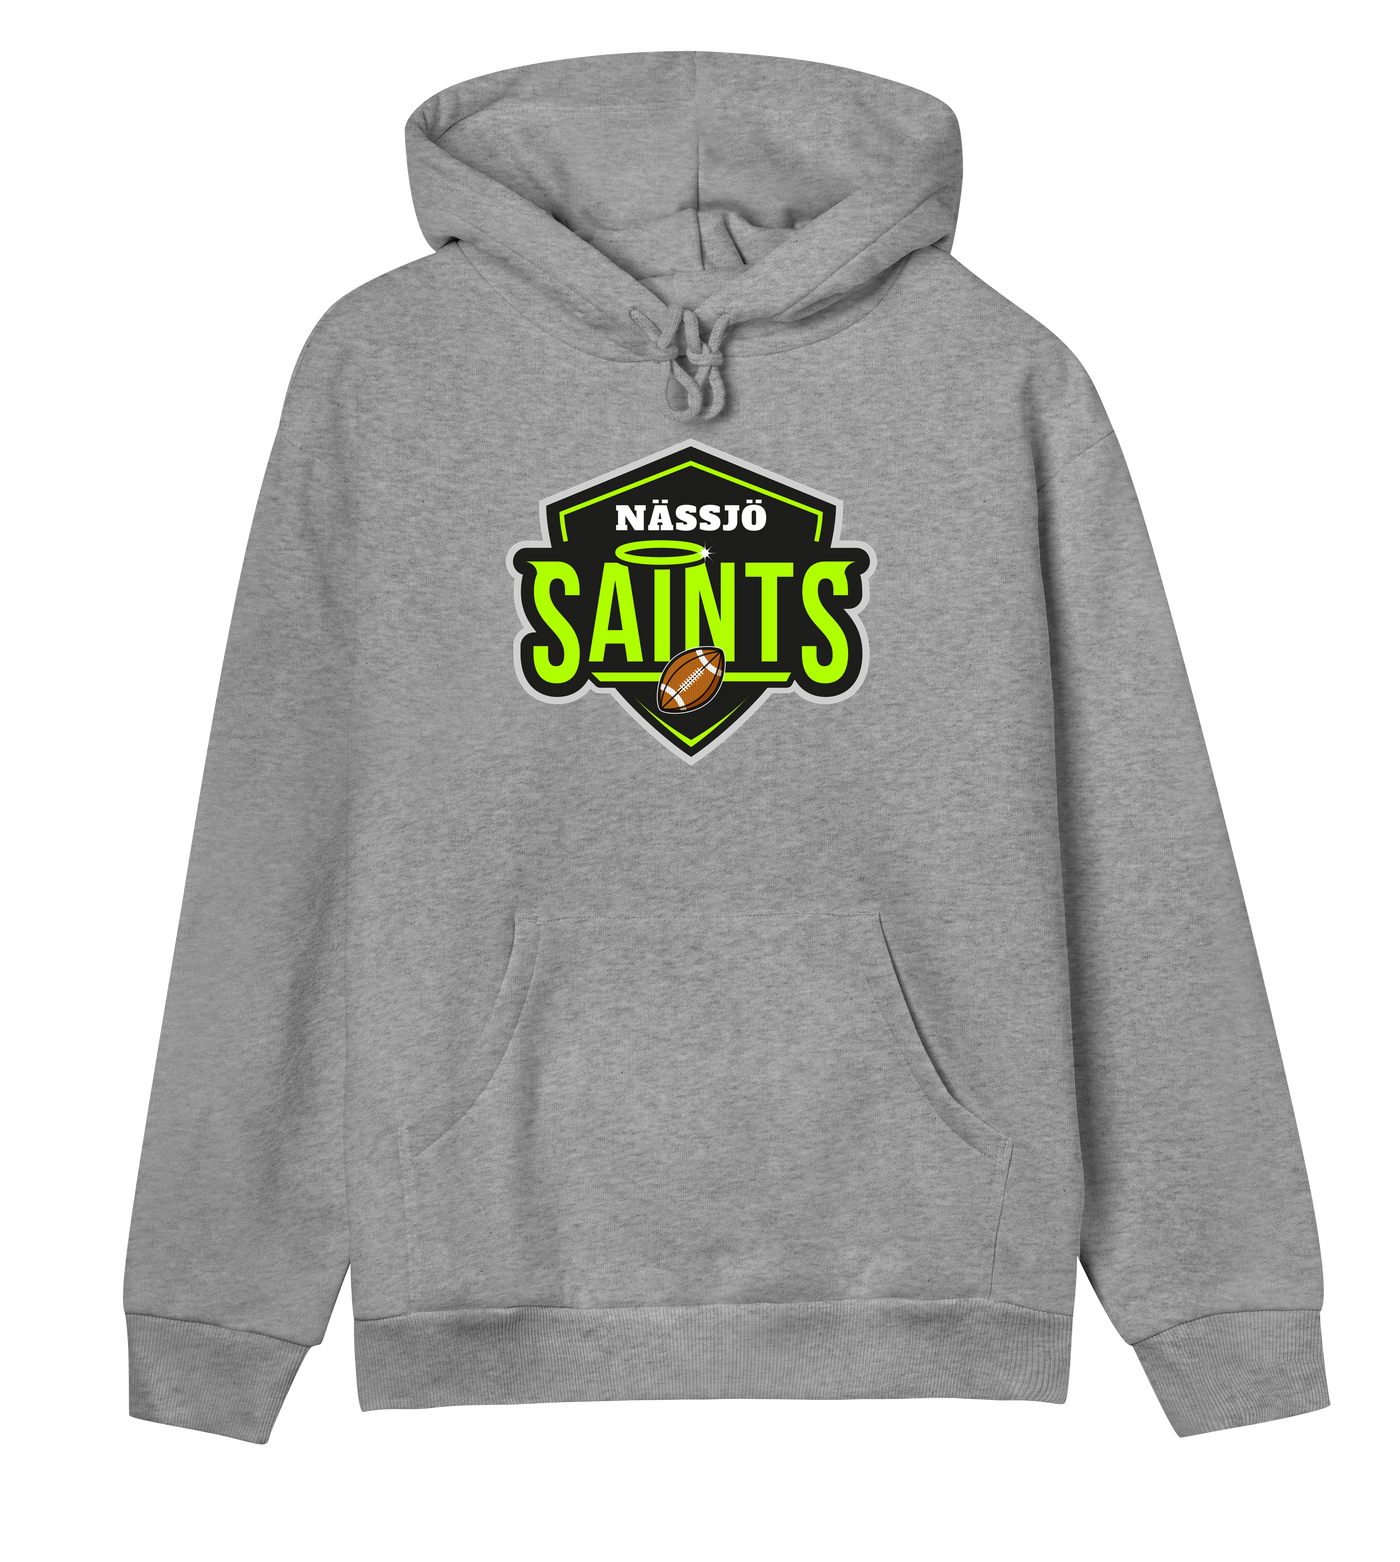 Nässjö Saints Women's Hoodie - Premium hoodie from REYRR STUDIO - Shop now at Reyrr Athletics